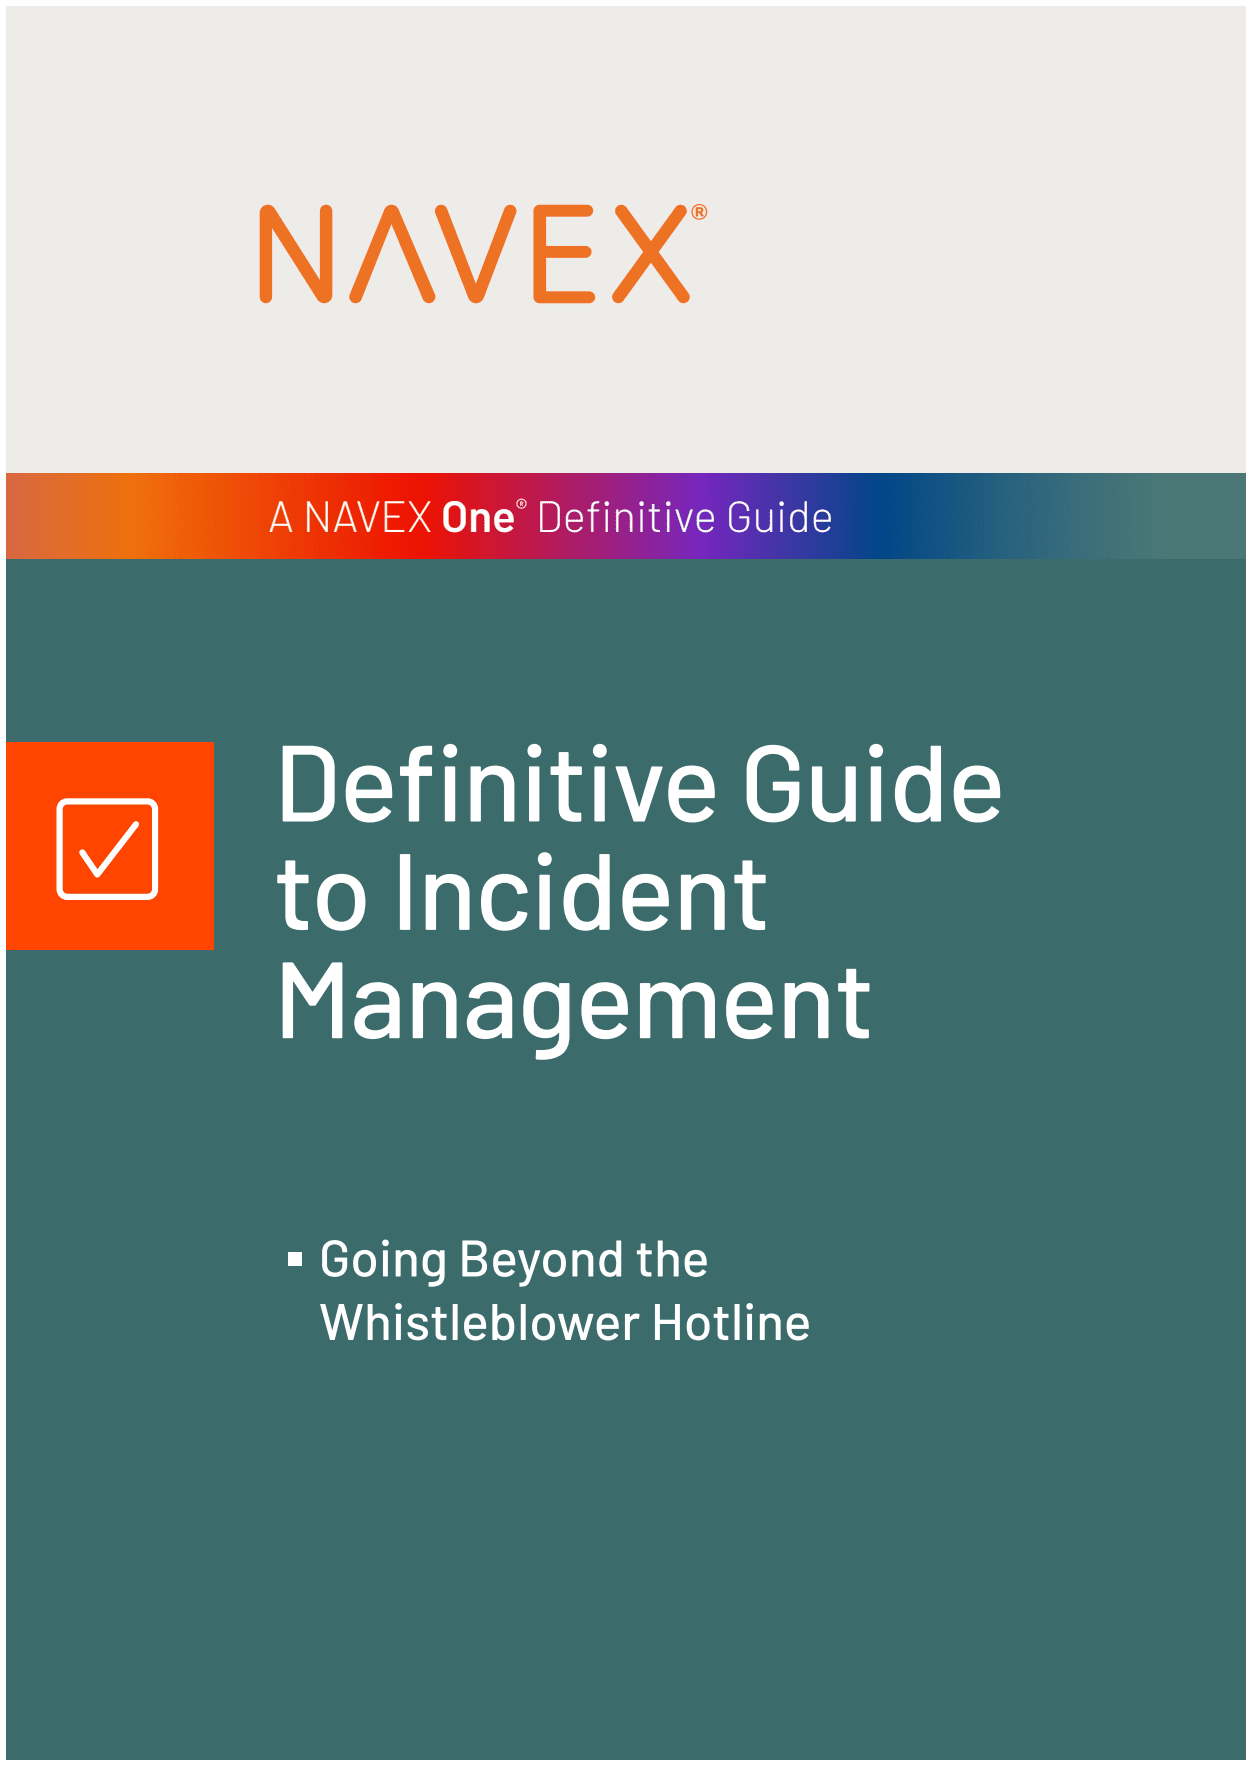 [Create an effective case management program](/en-us/resources/definitive-guides/definitive-guide-incident-management/)